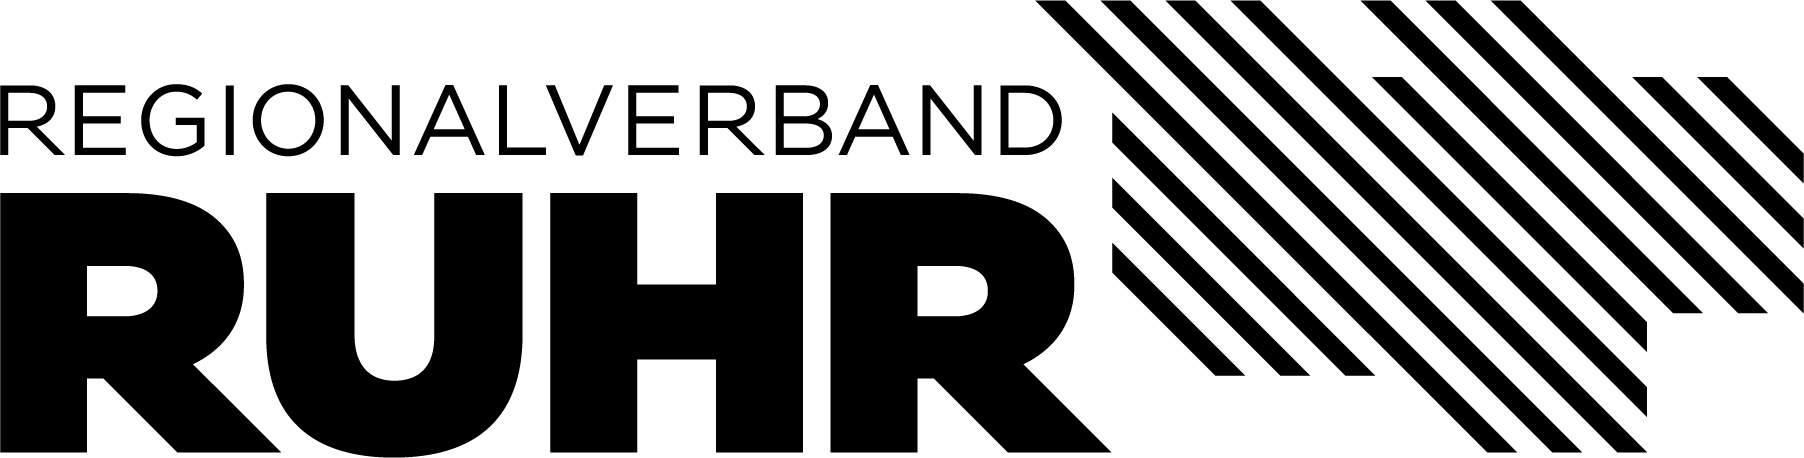 Logo des Regionalverband Ruhr